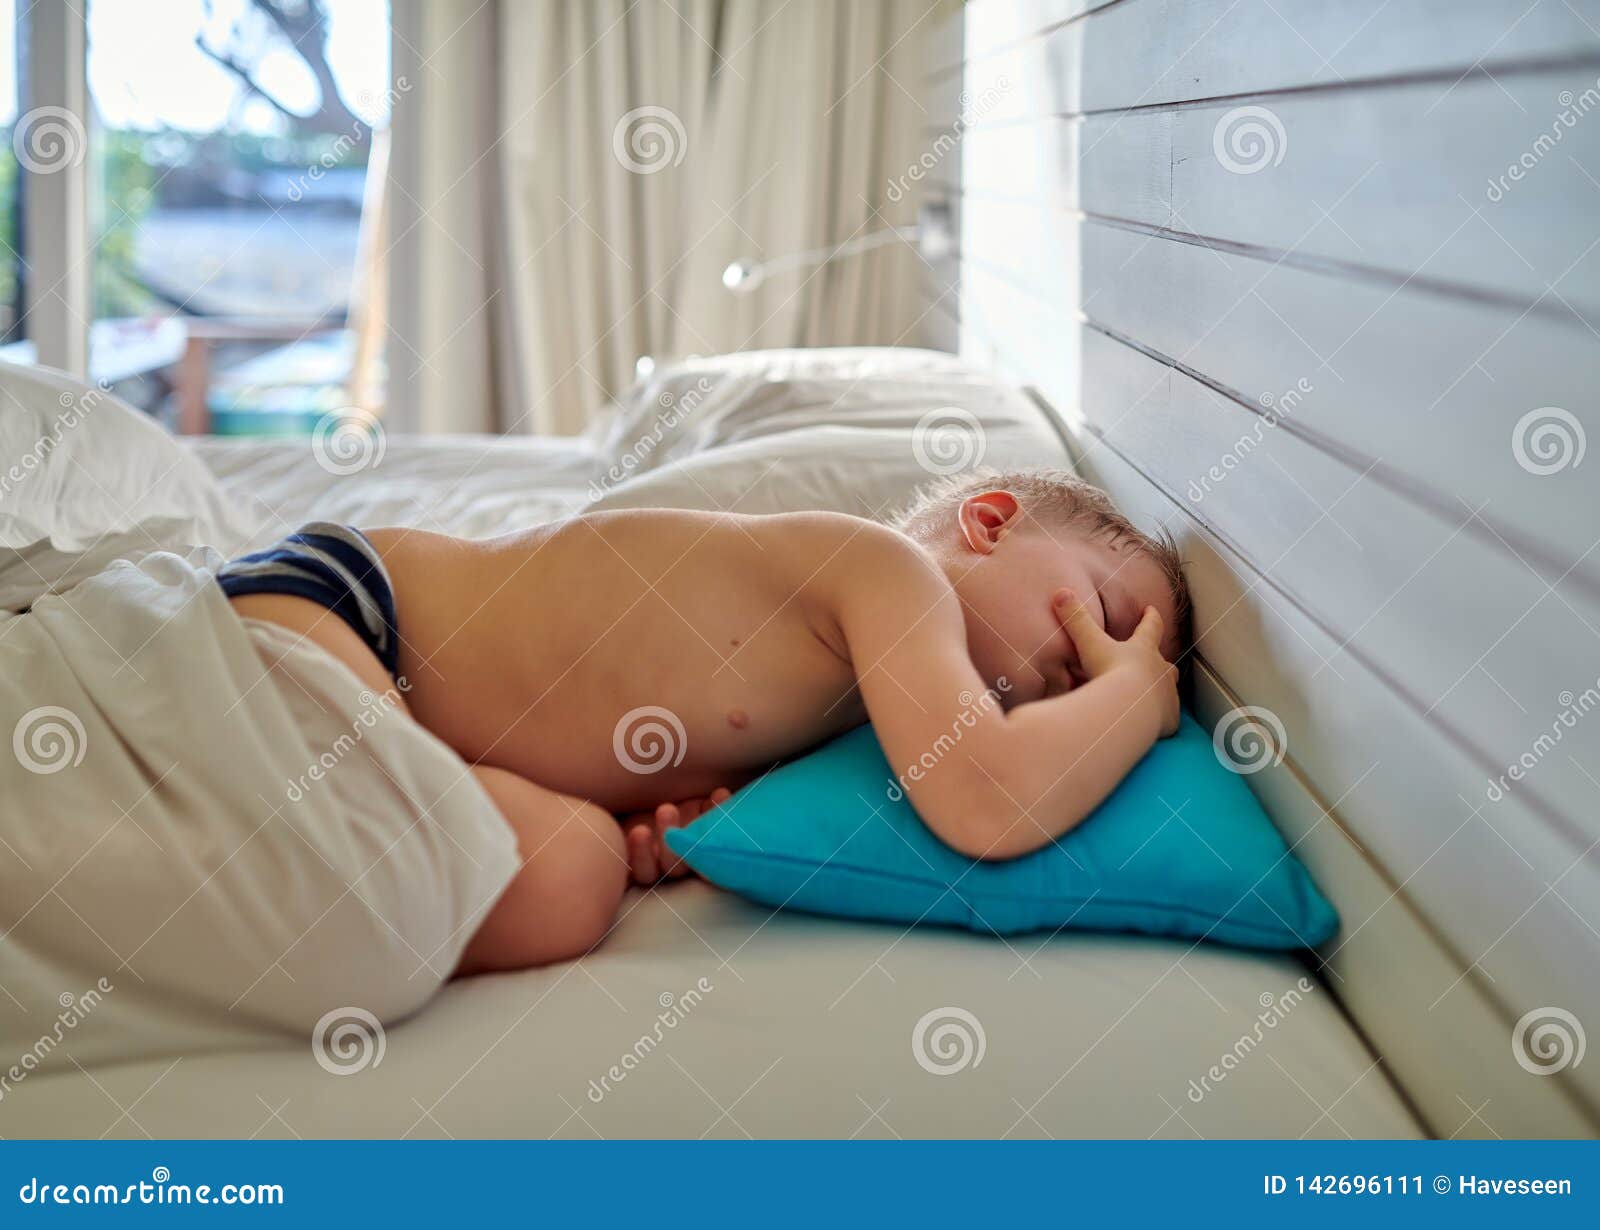 Спящему мальчику сняли трусы. Спящий мальчик. Спящие мальчики. Мальчишки спят.